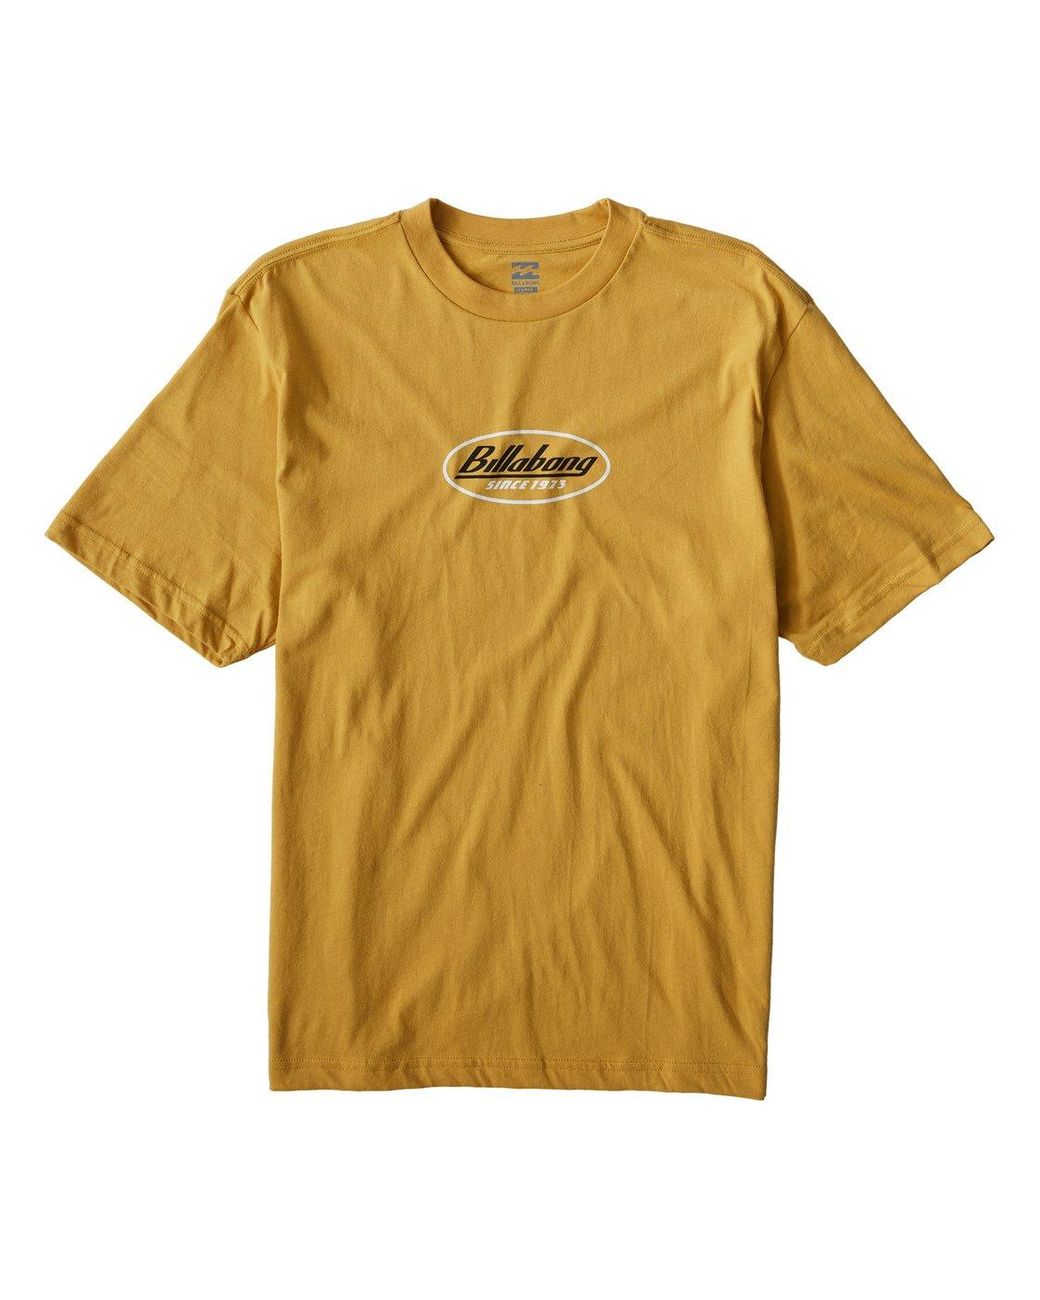 Billabong Cotton 97 T-shirt in Yellow for Men - Lyst